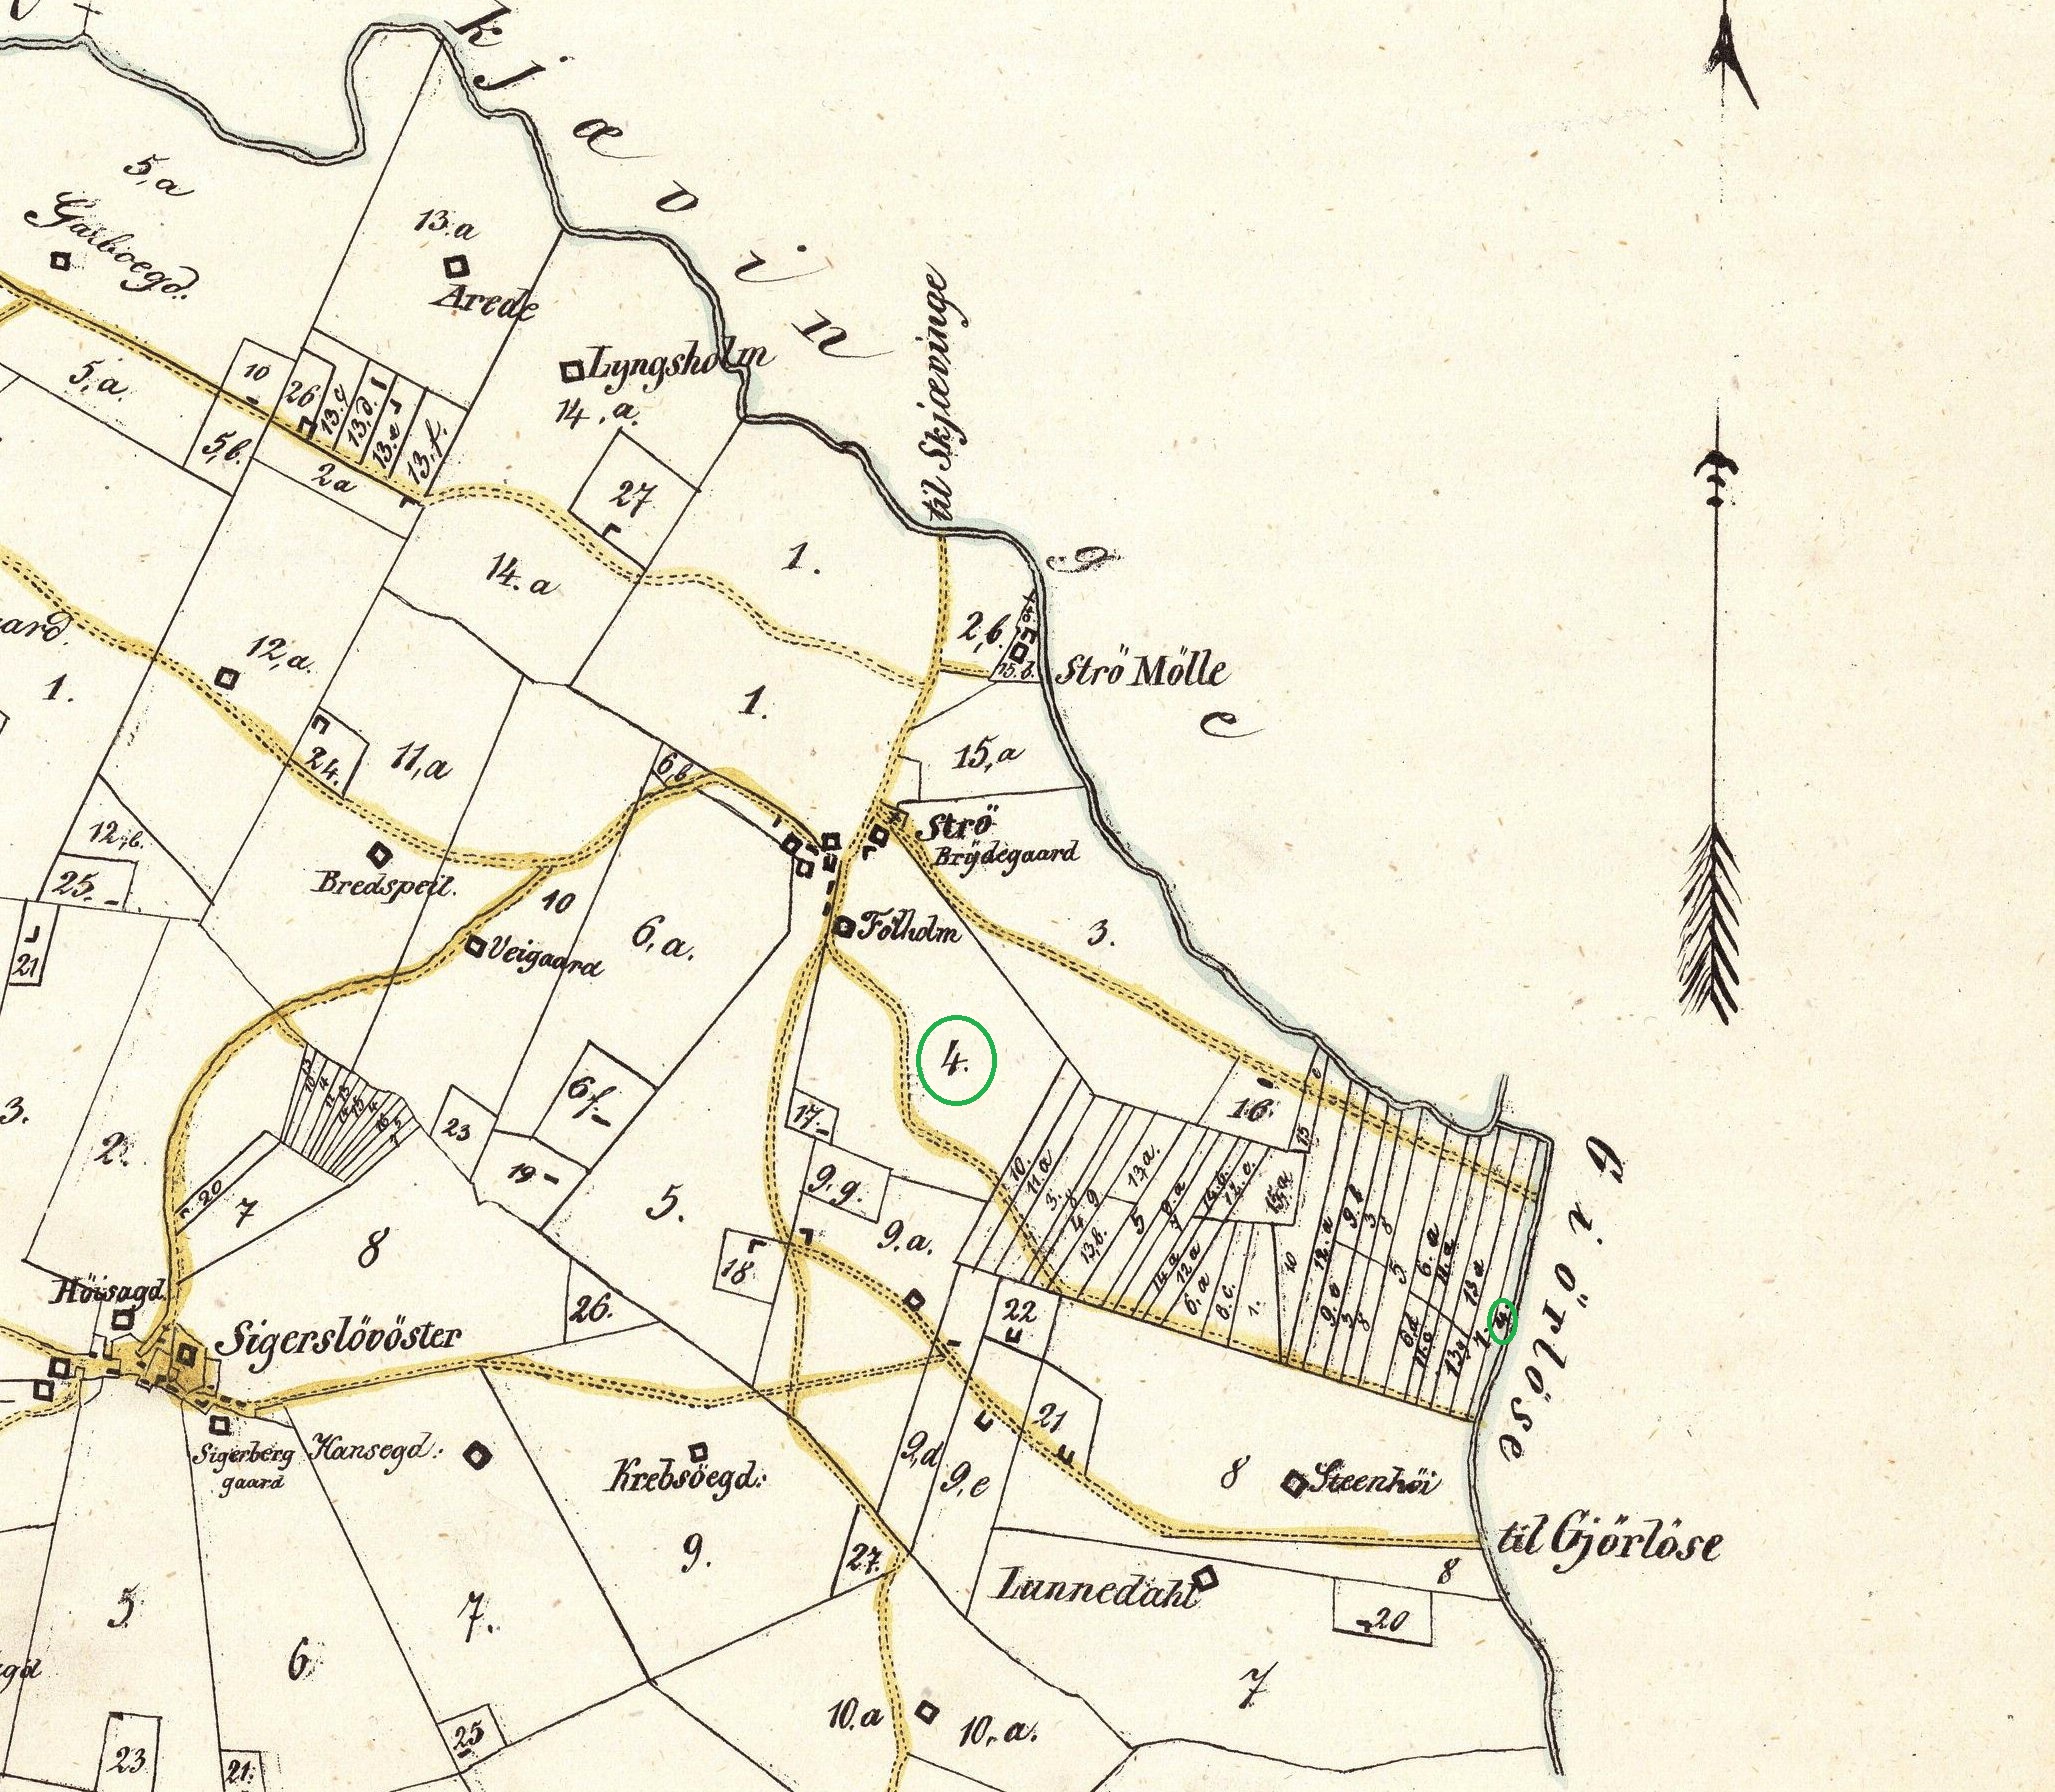 Flholms arealer 1850